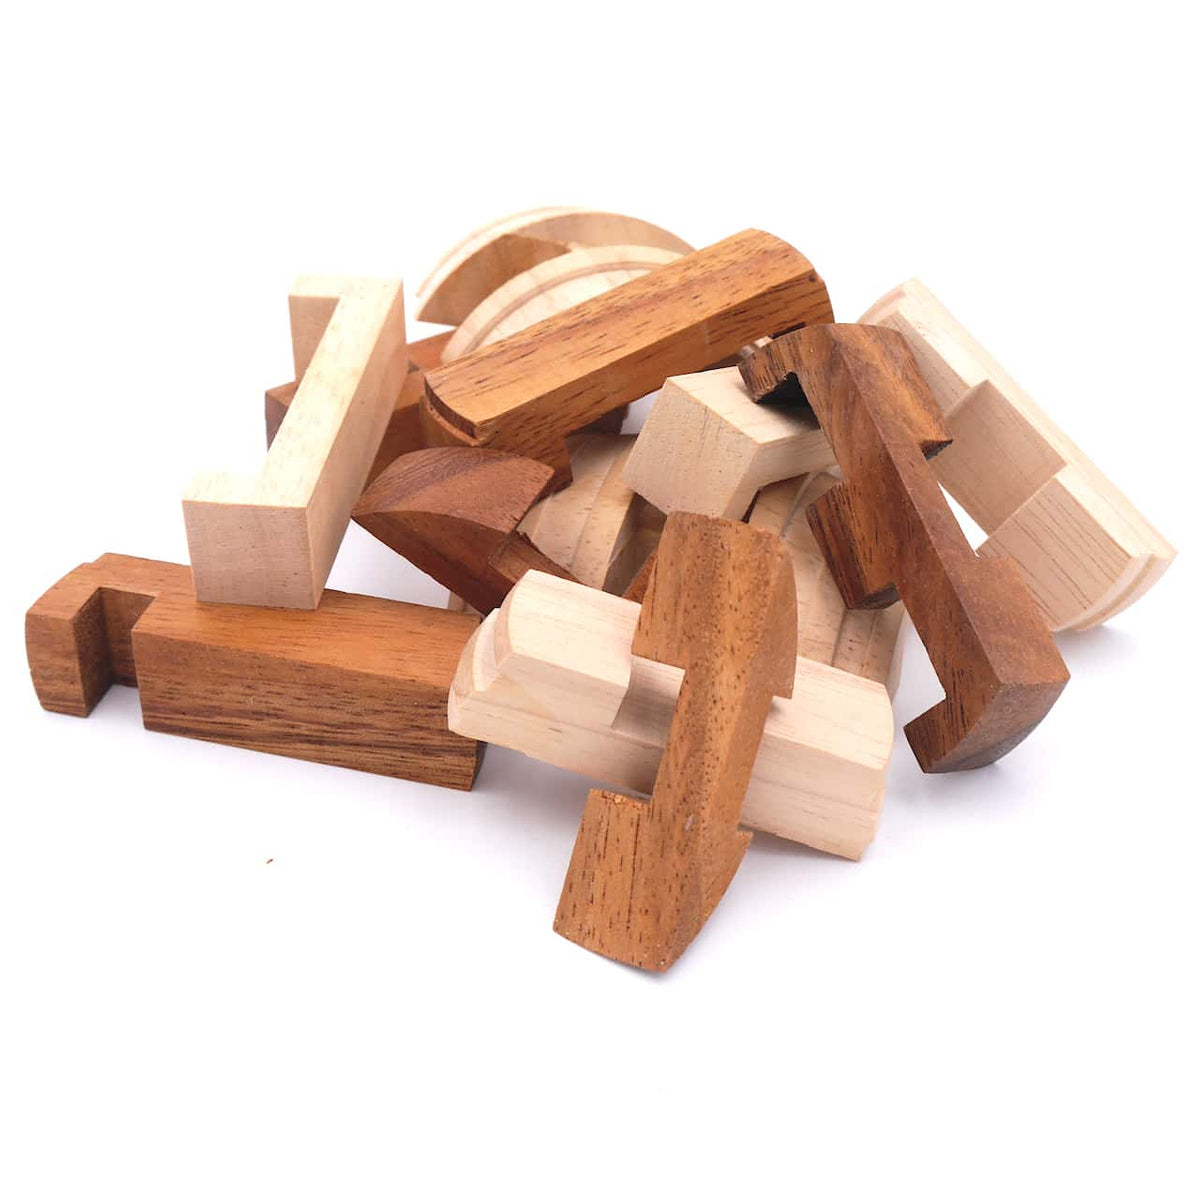 Ein Holz-Puzzle mit mehreren Teilen, die zusammengesetzt werden müssen, um das Knobelspiel zu vervollständigen.